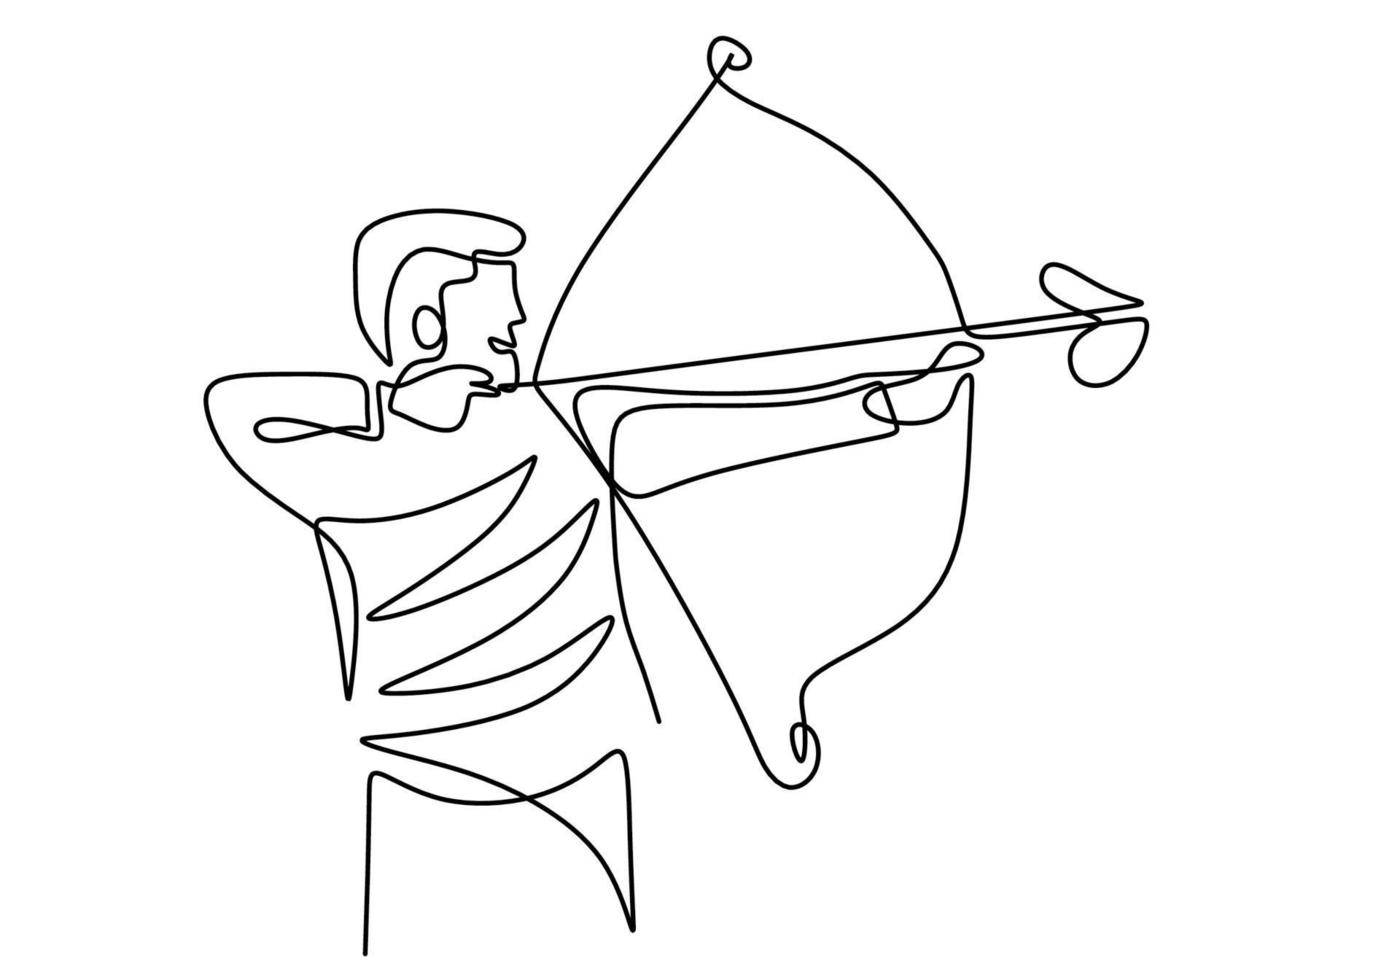 Kontinuierliche Strichzeichnung eines jungen professionellen Bogenschützen, stehend und fokussiert auf das Schießen des Ziels. gesundes Erfrischungsschießen mit Bogen. Bogenschießen Sportthema lokalisiert auf weißem Hintergrund vektor